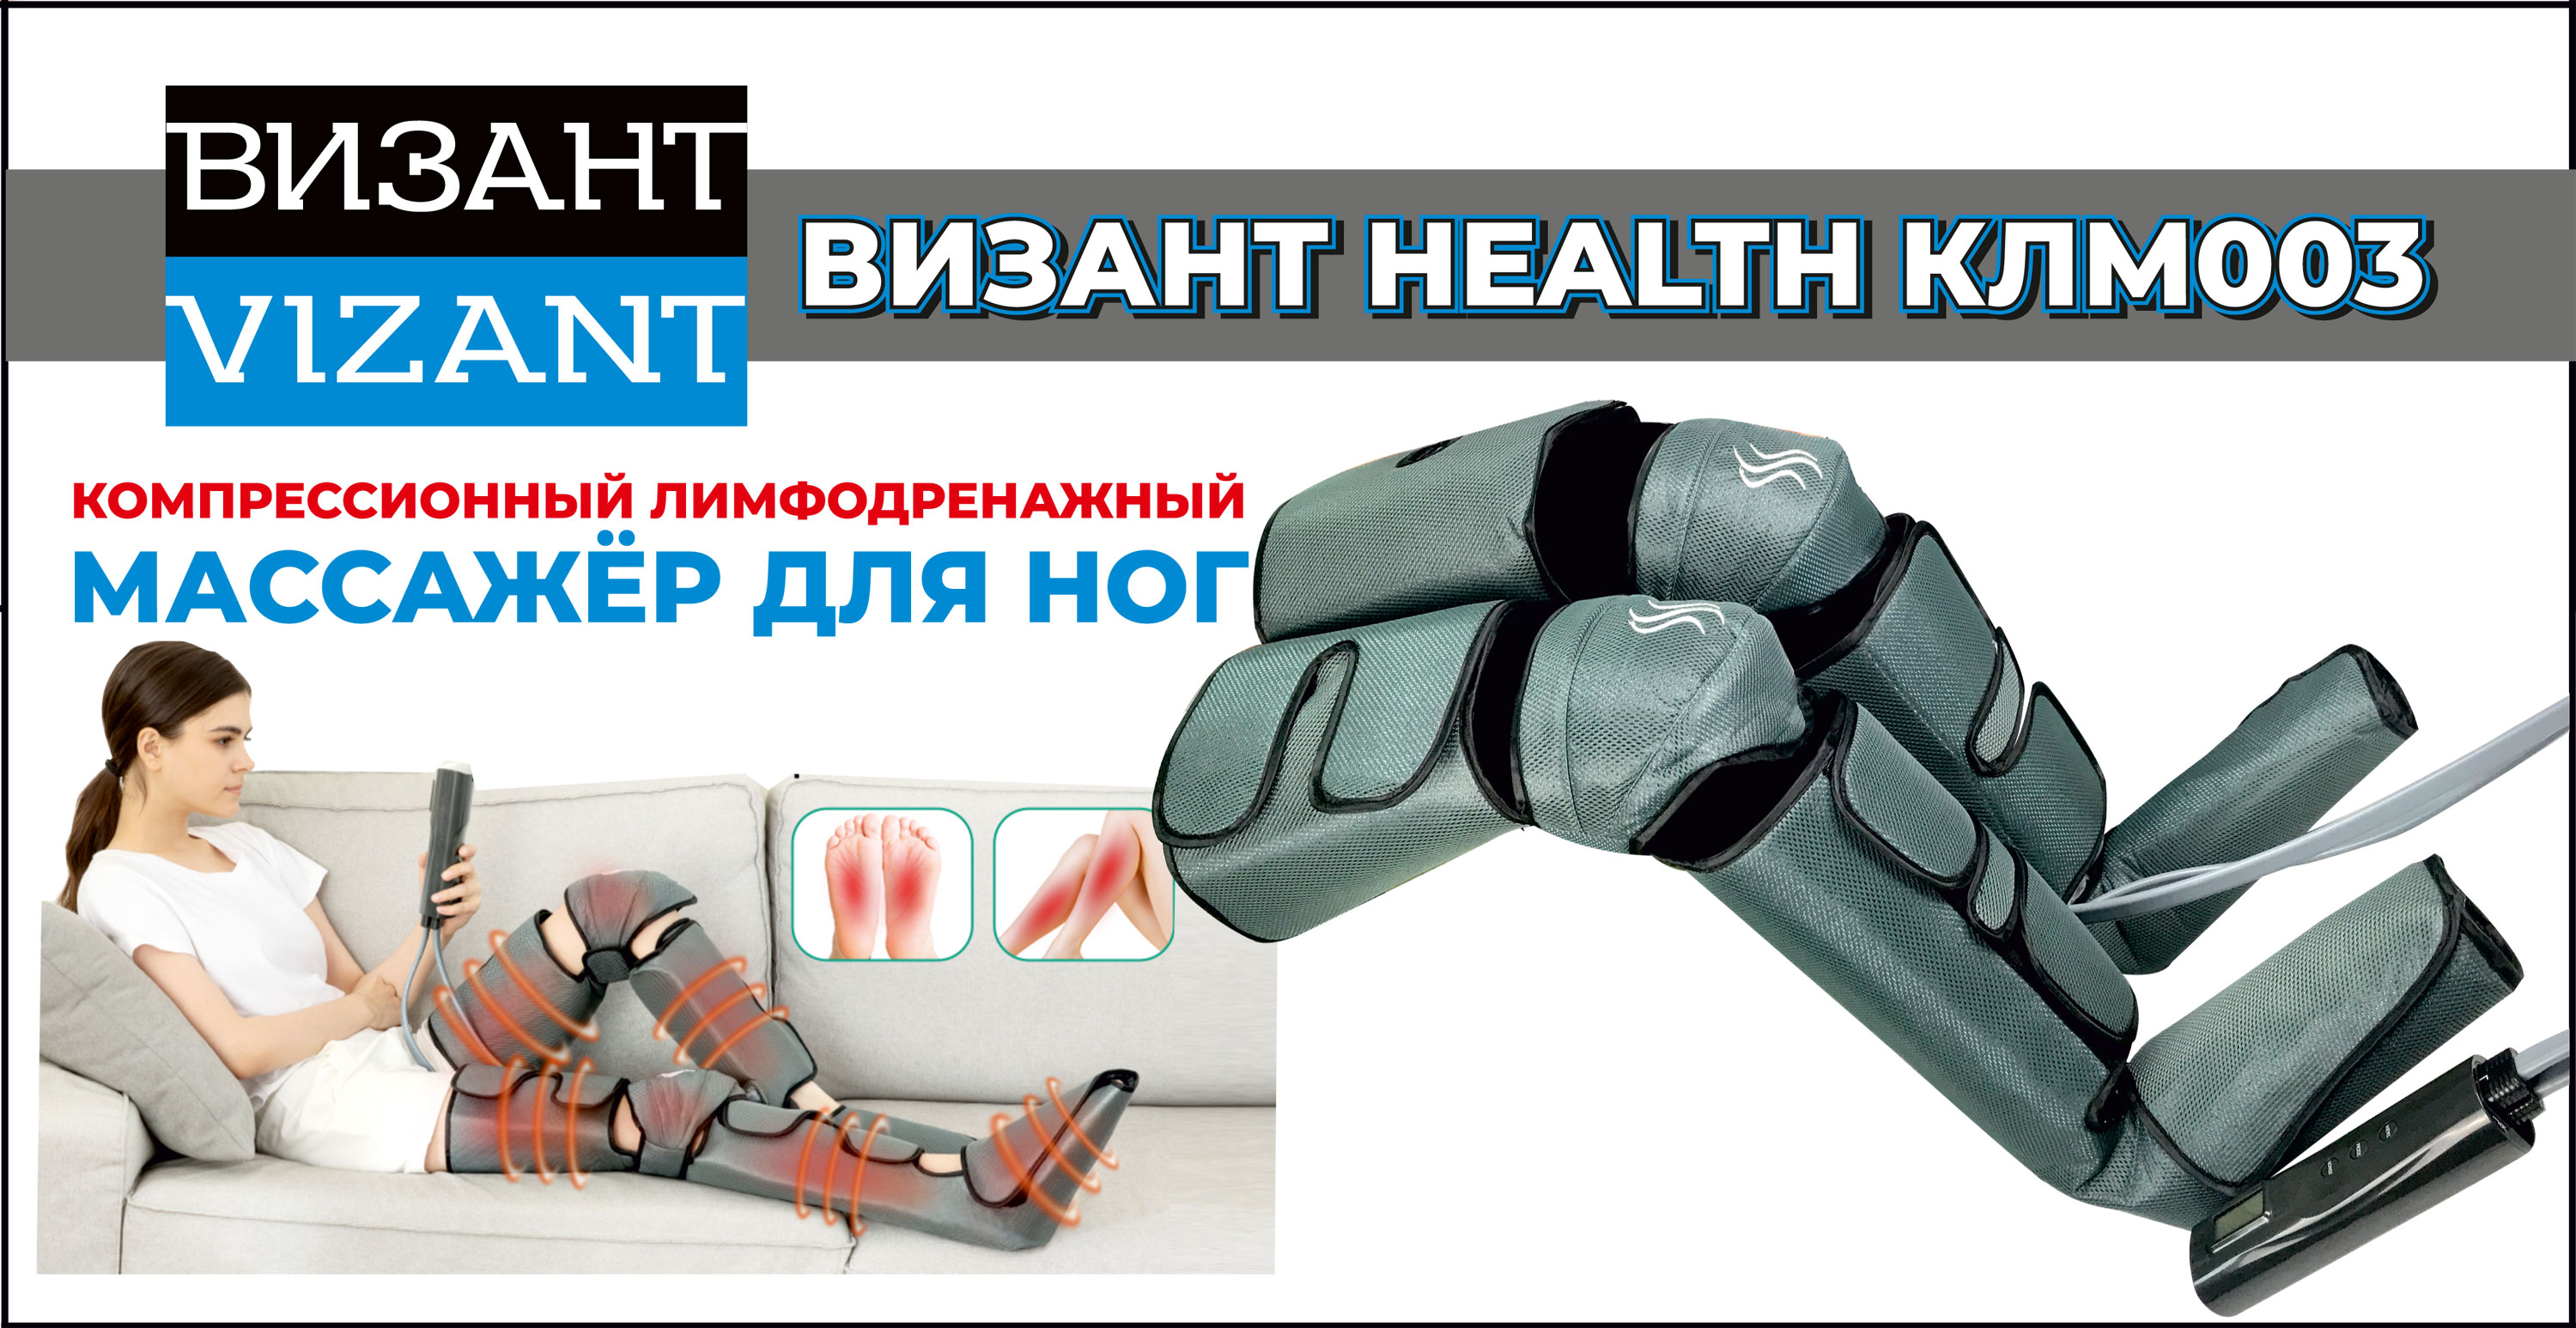 Компресионный для ног Vizant Лимфодренажный массажер для ног HEALTH КЛМ003 - фото 13